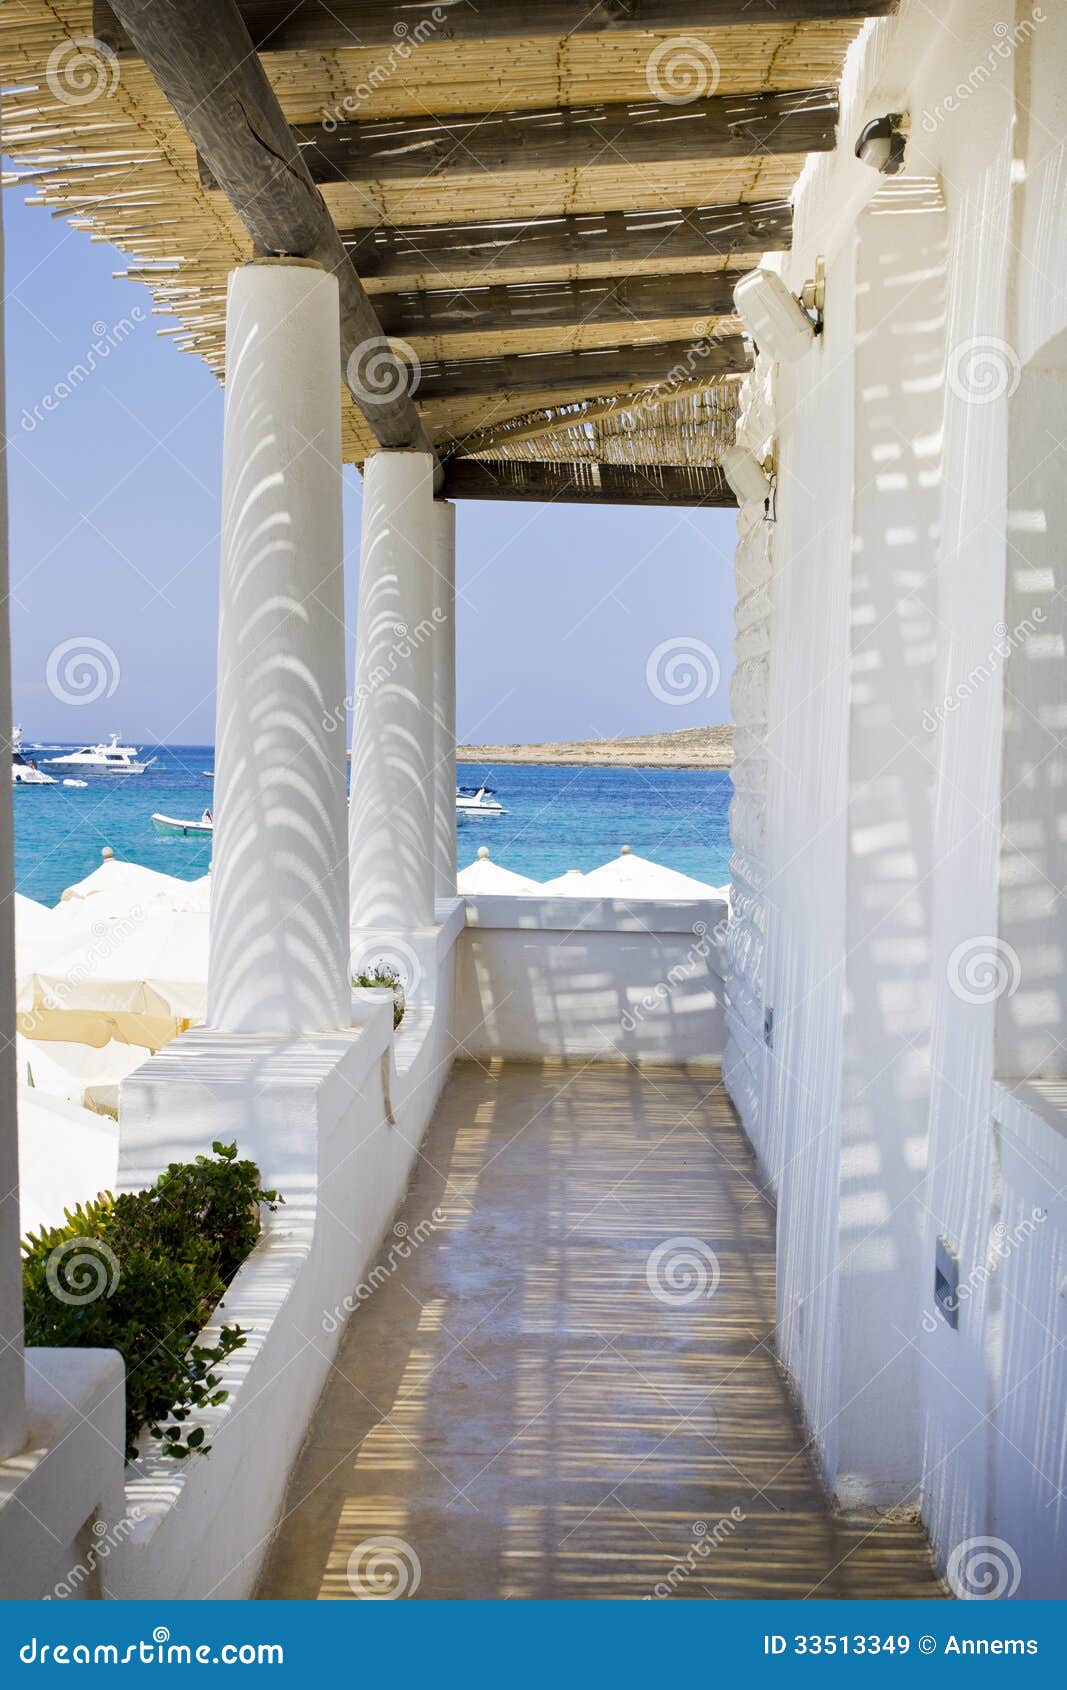 Beach club Malta, Europe stock image. Image of lobby - 33513349